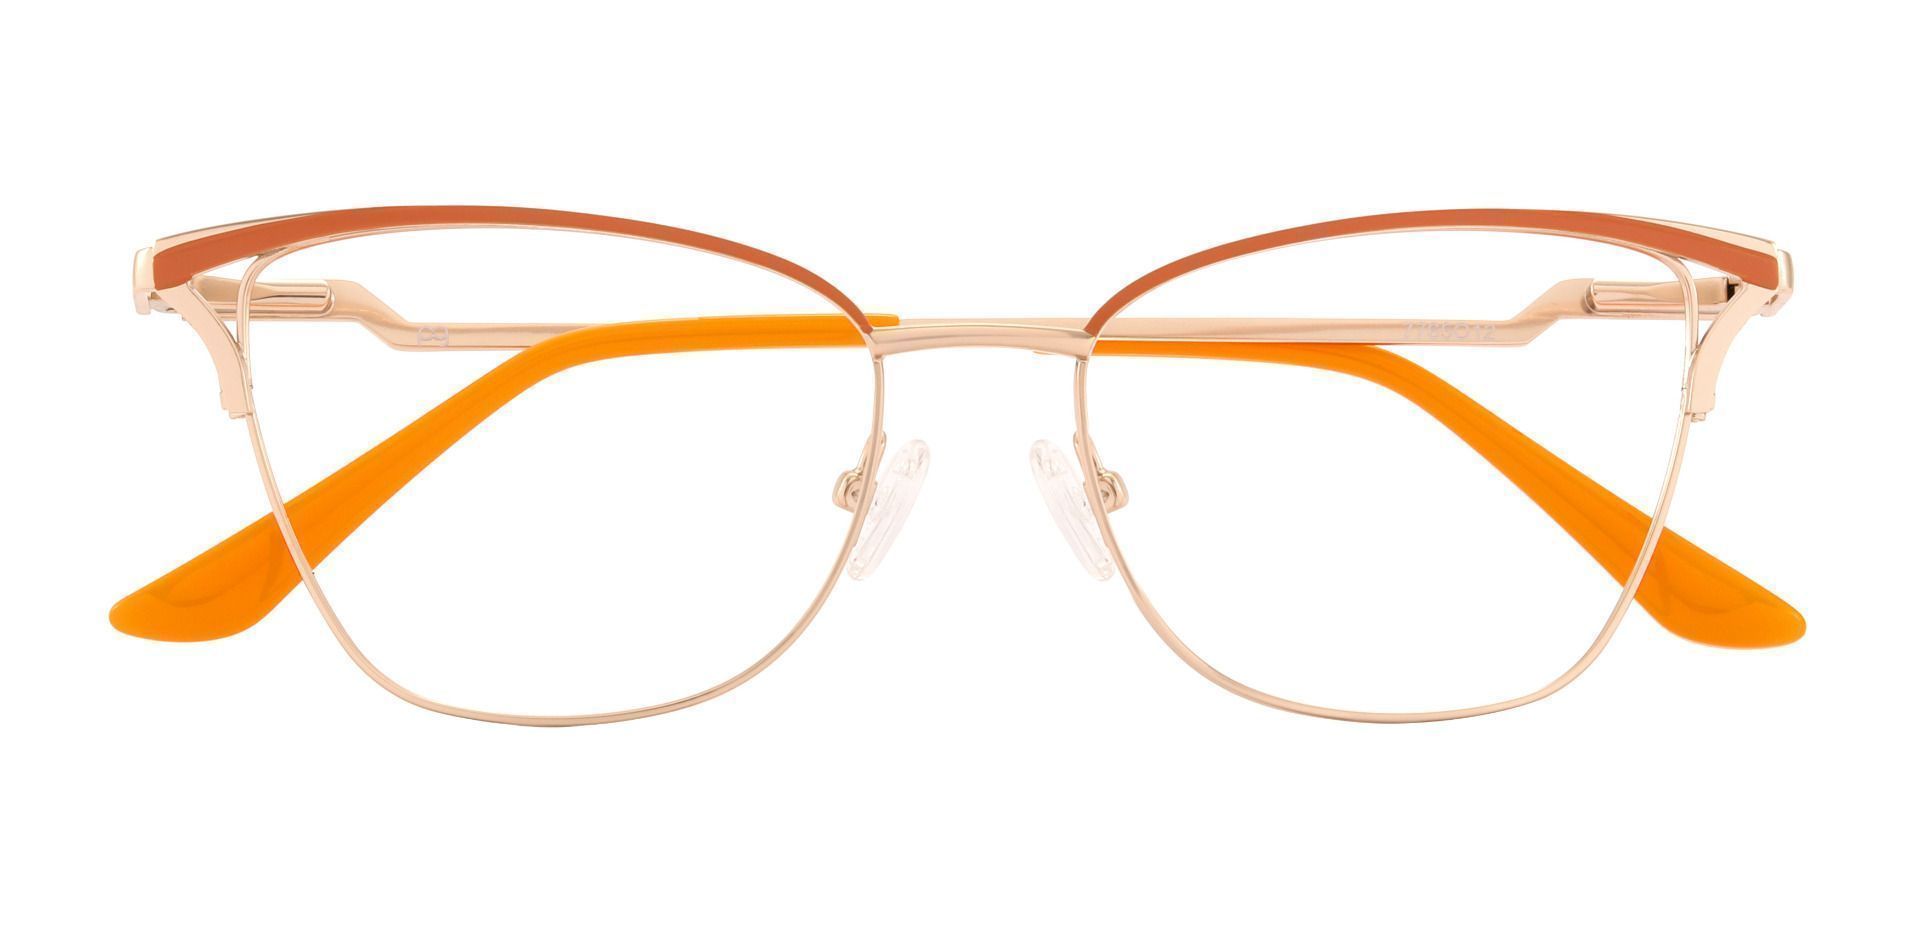 Giada Cat Eye Blue Light Blocking Glasses - Orange, Women's Eyeglasses